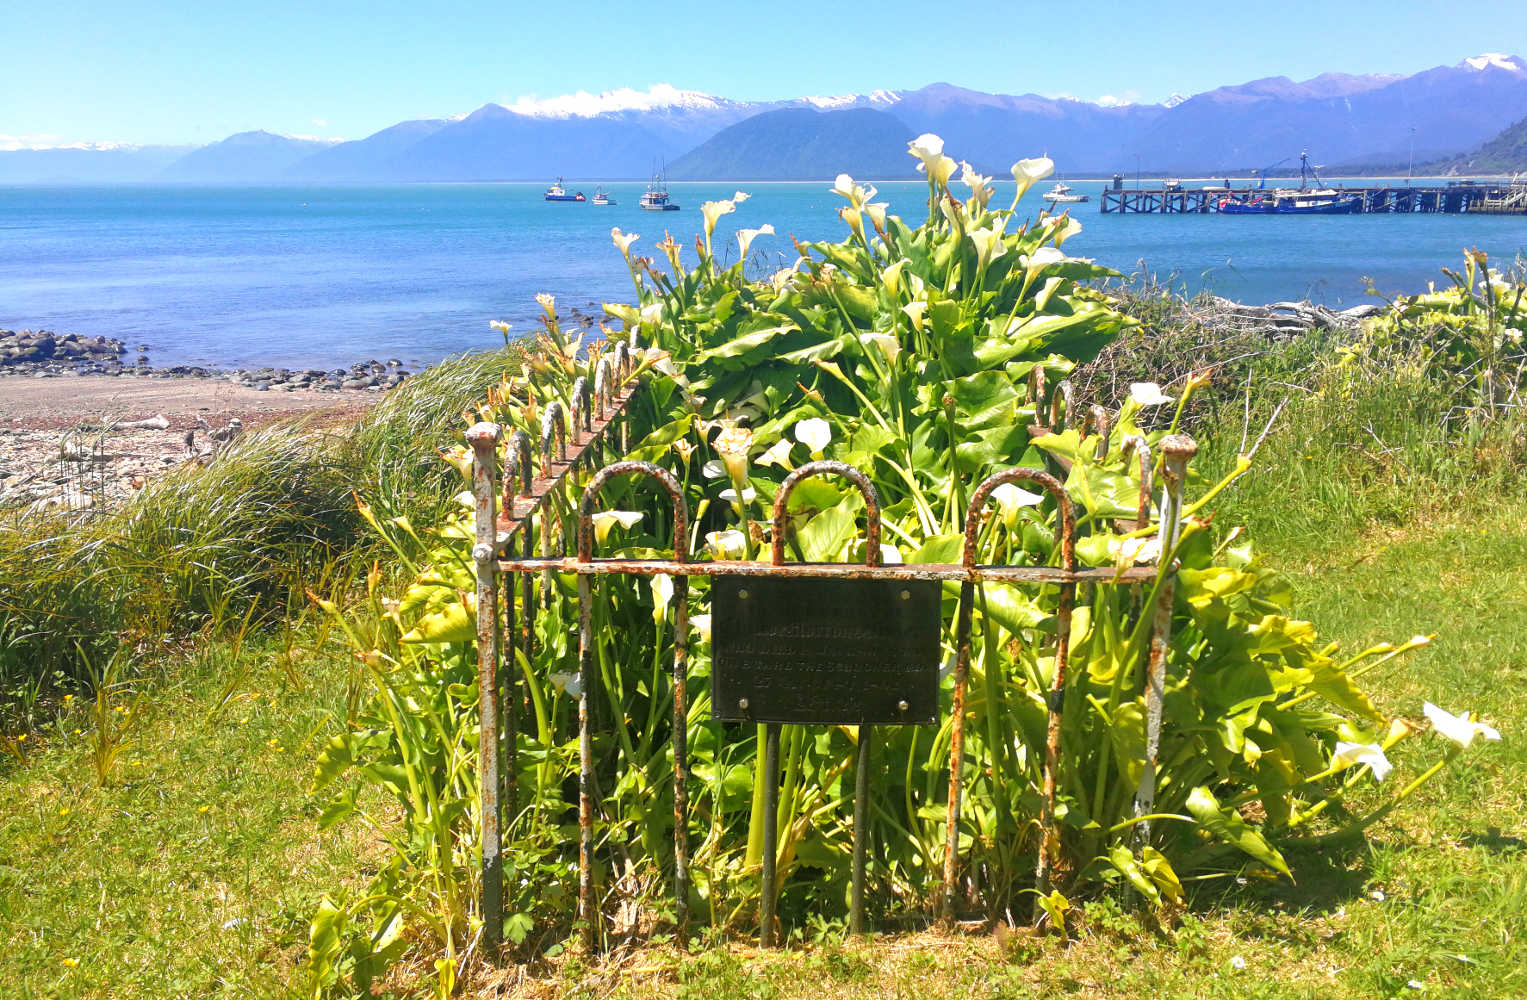 Lonely grave, Jackson Bay, West Coast, New Zealand @kiwisflythecoop